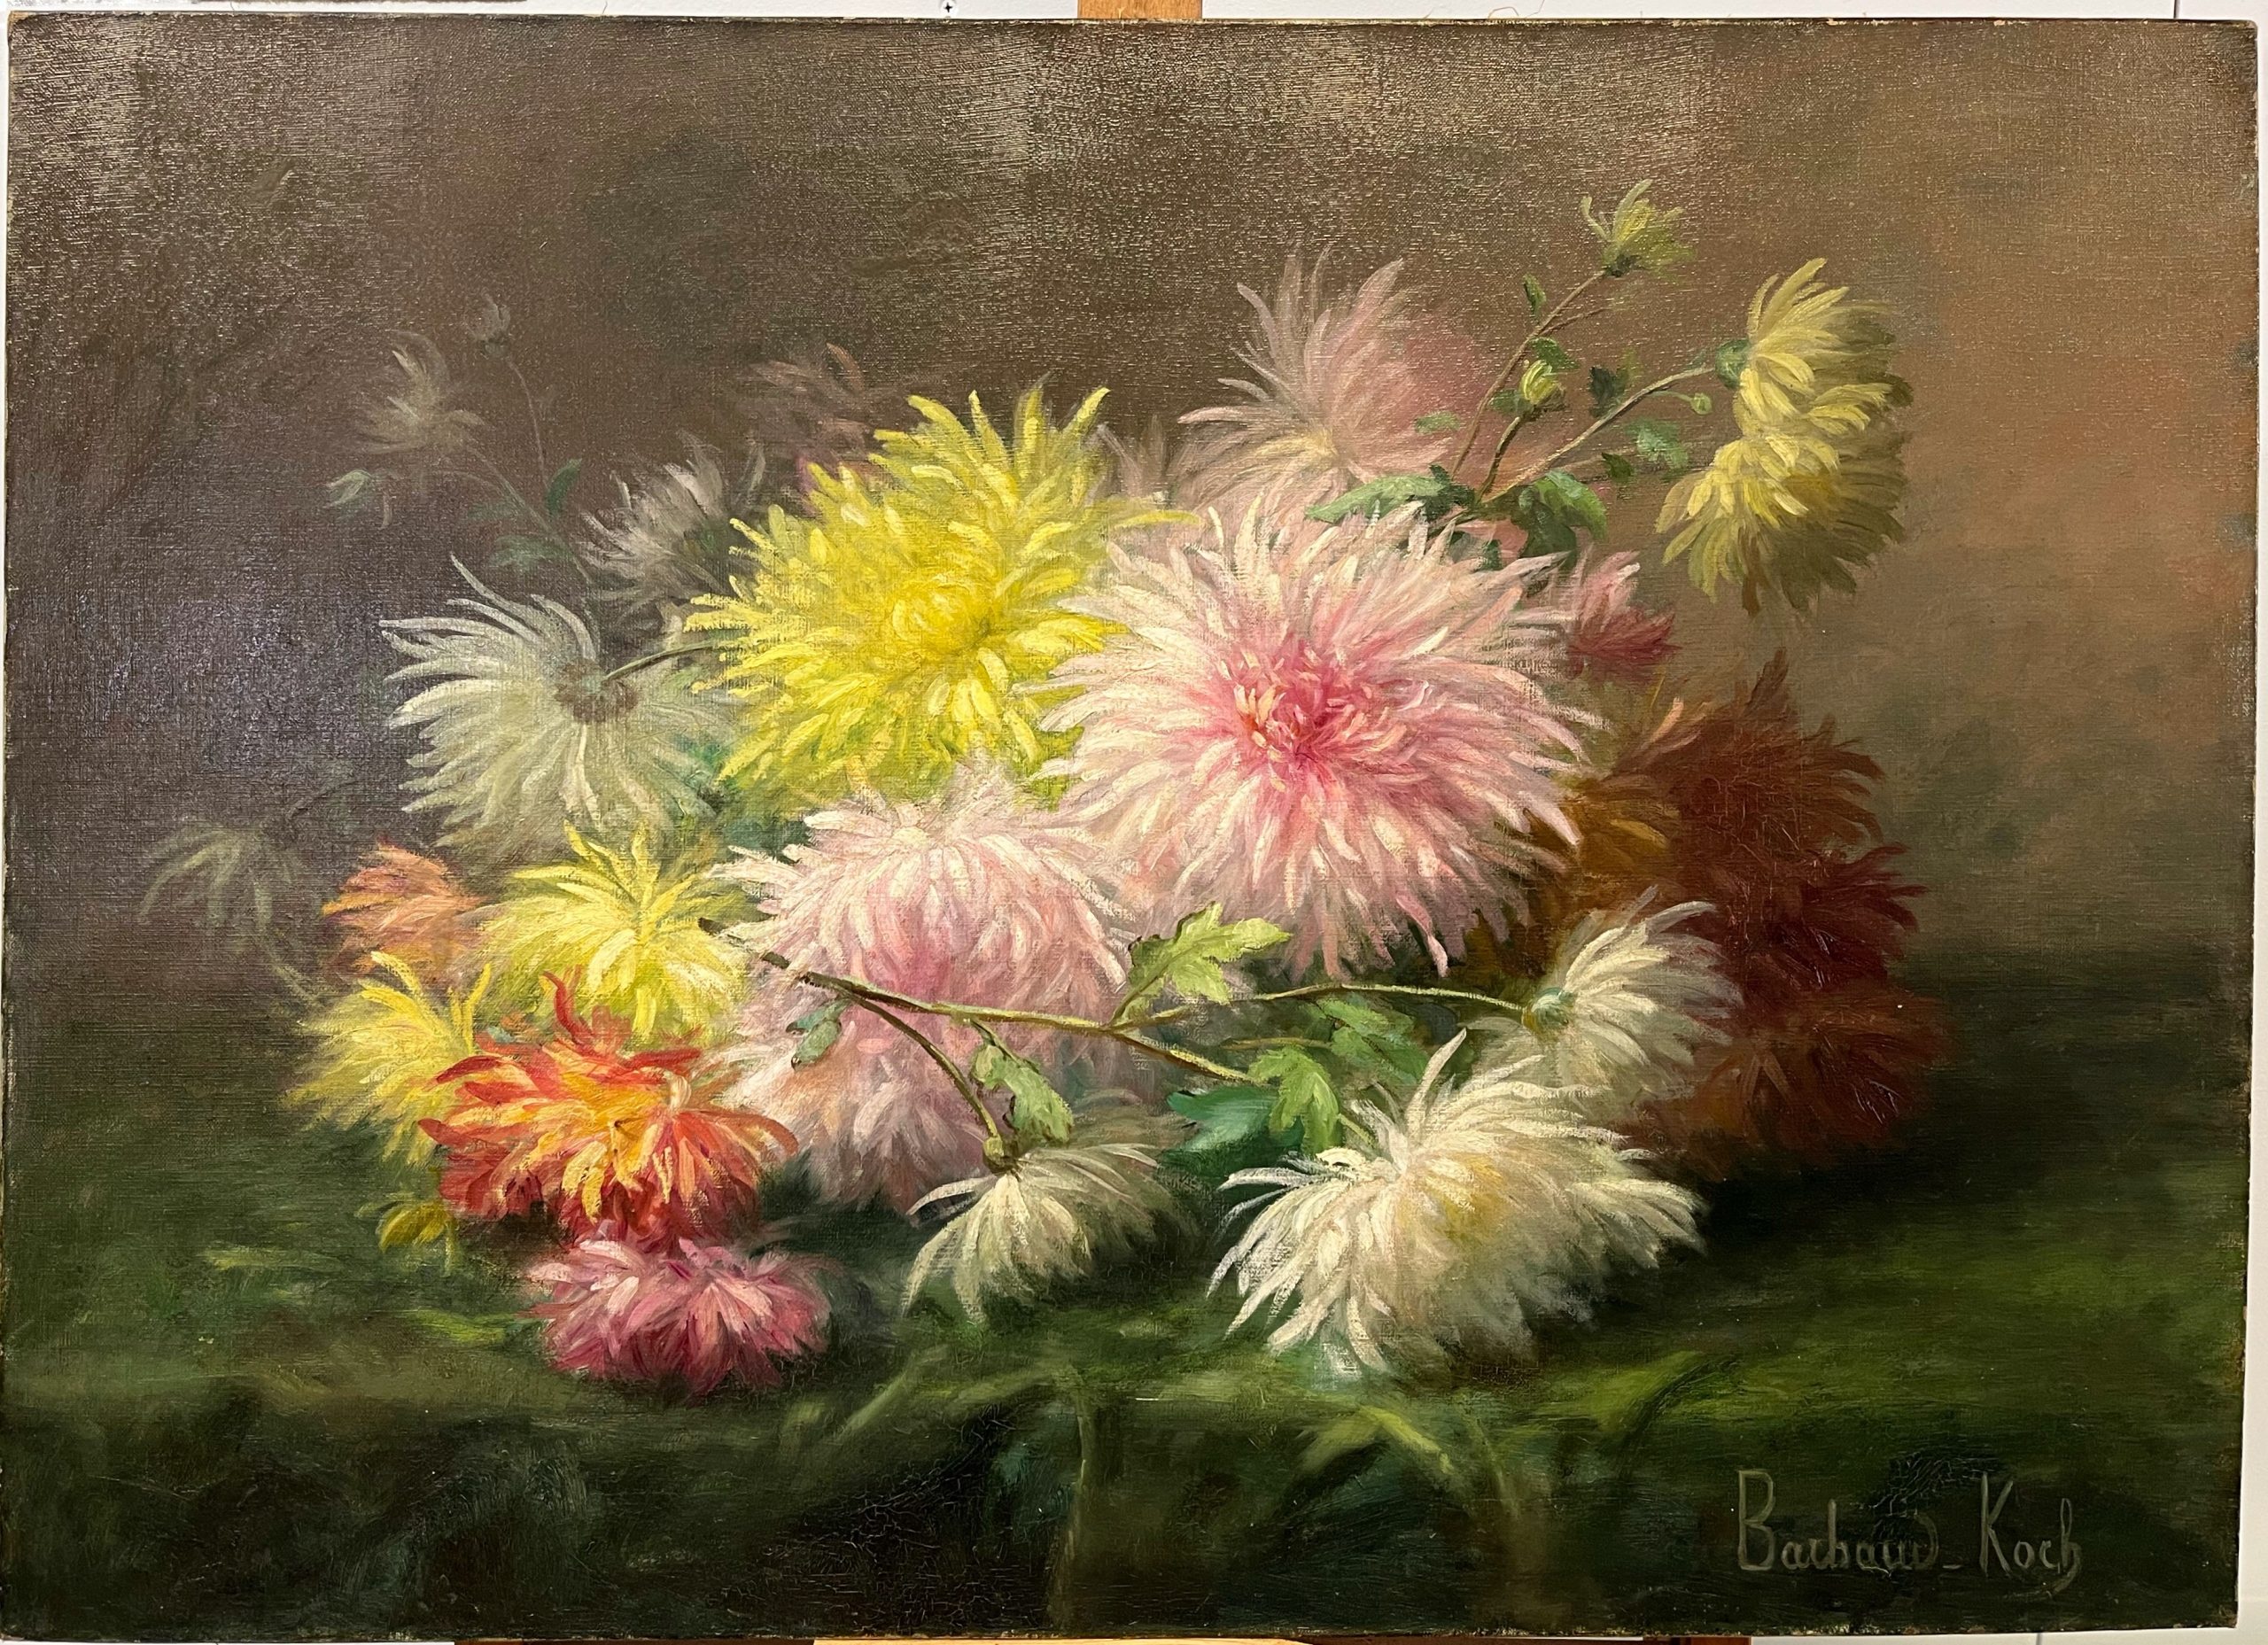 BARBAUD-KOCH, bouquet de dalhias, XXe, huile sur toile, 73 x 54 cm